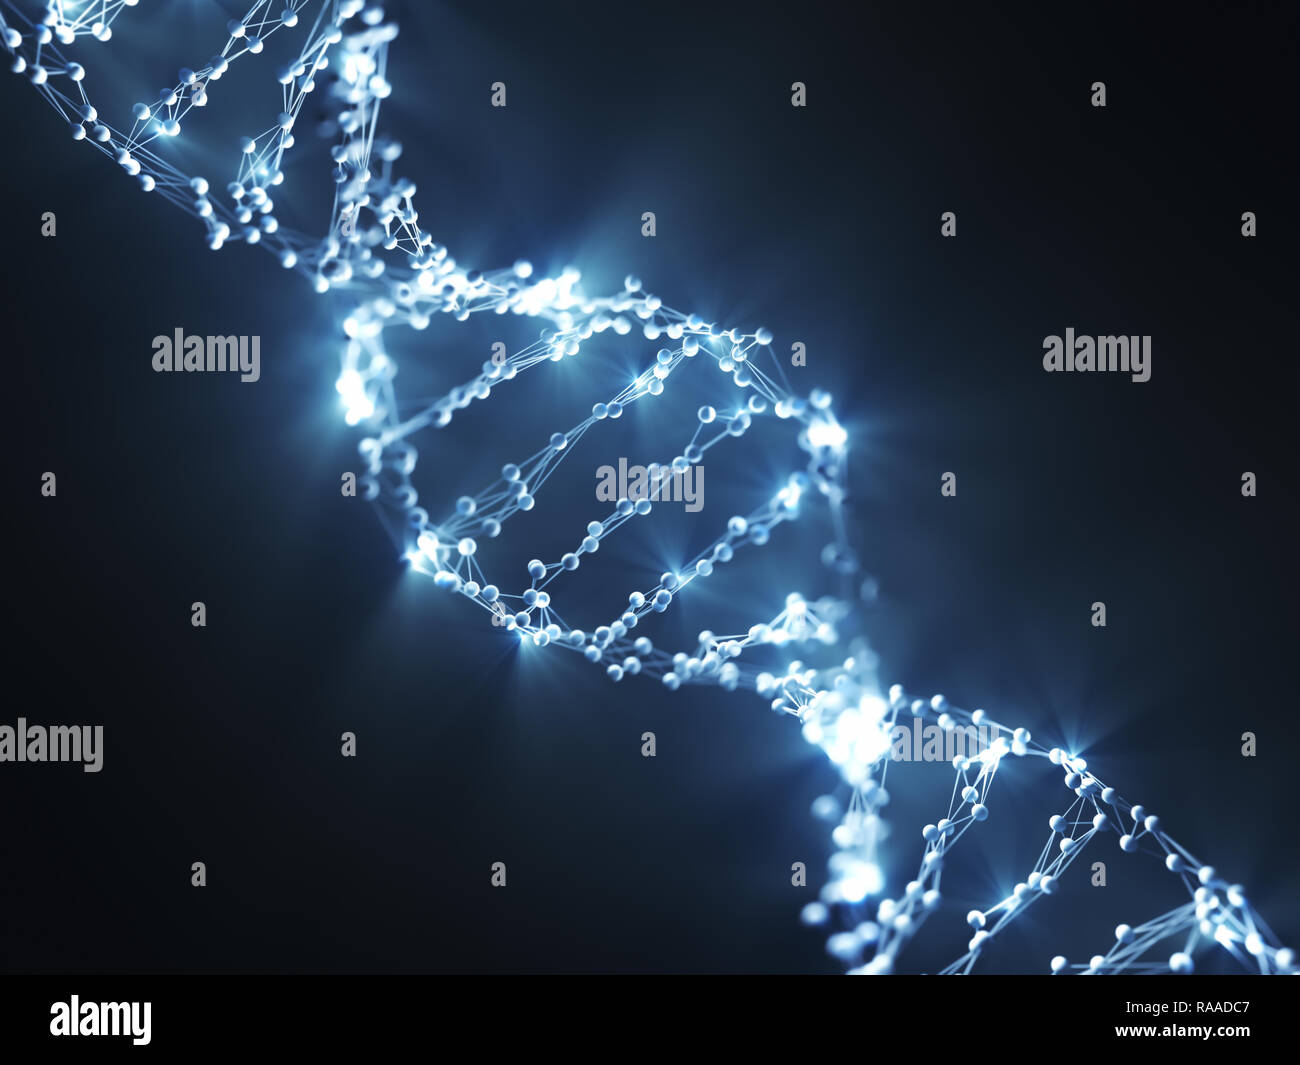 Desoxyribonukleinsäure (DNA), Molekül, das die genetische Code trägt. 3D-Illustration, Wissenschaft Konzept Bild. Stockfoto